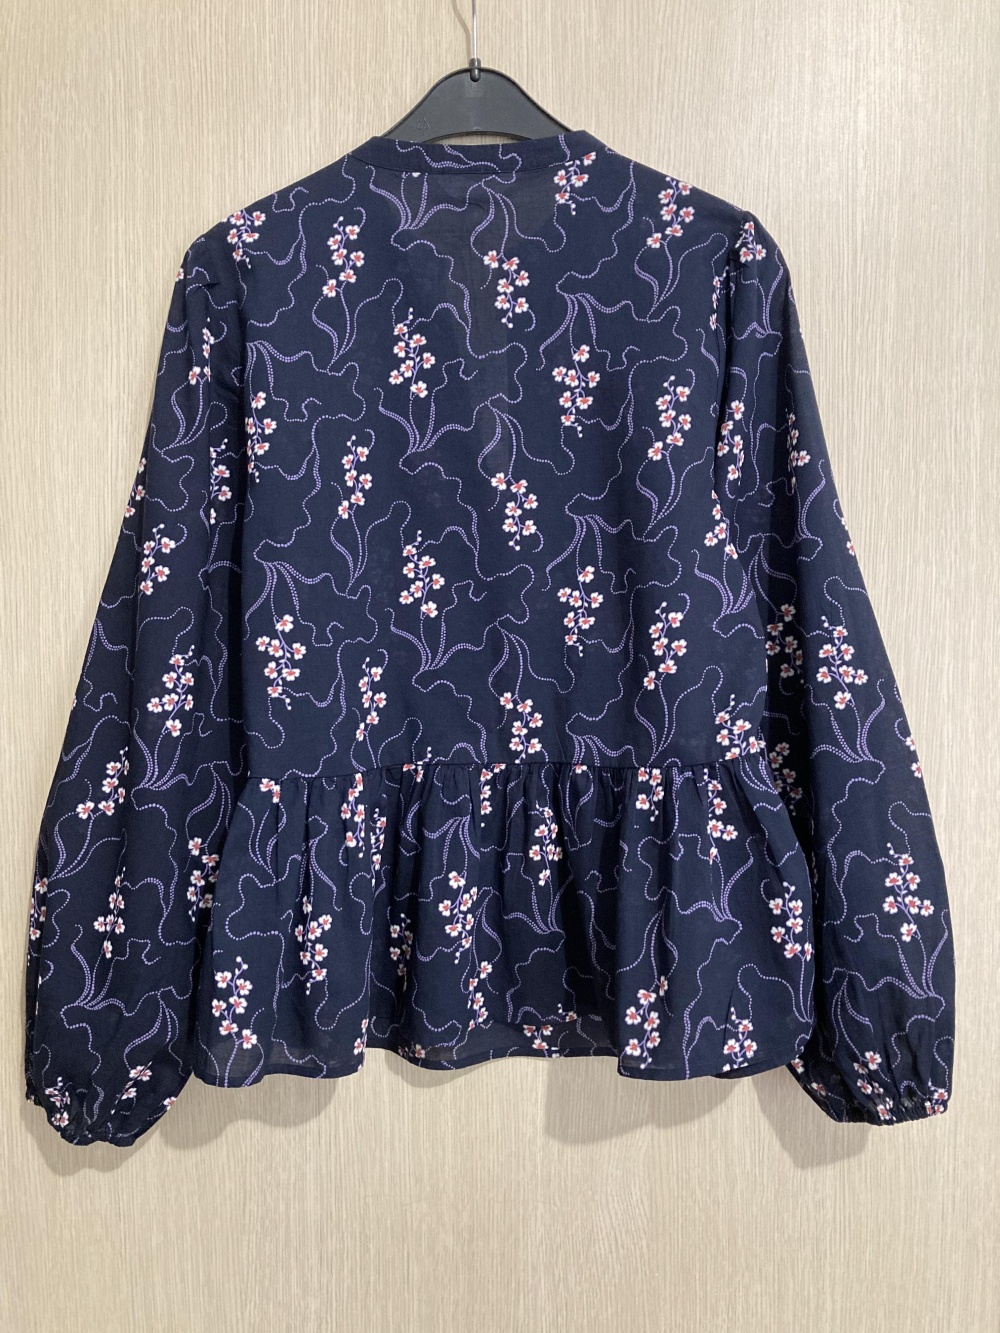 Блуза “ Marks & Spencer ”, 46-48 размер